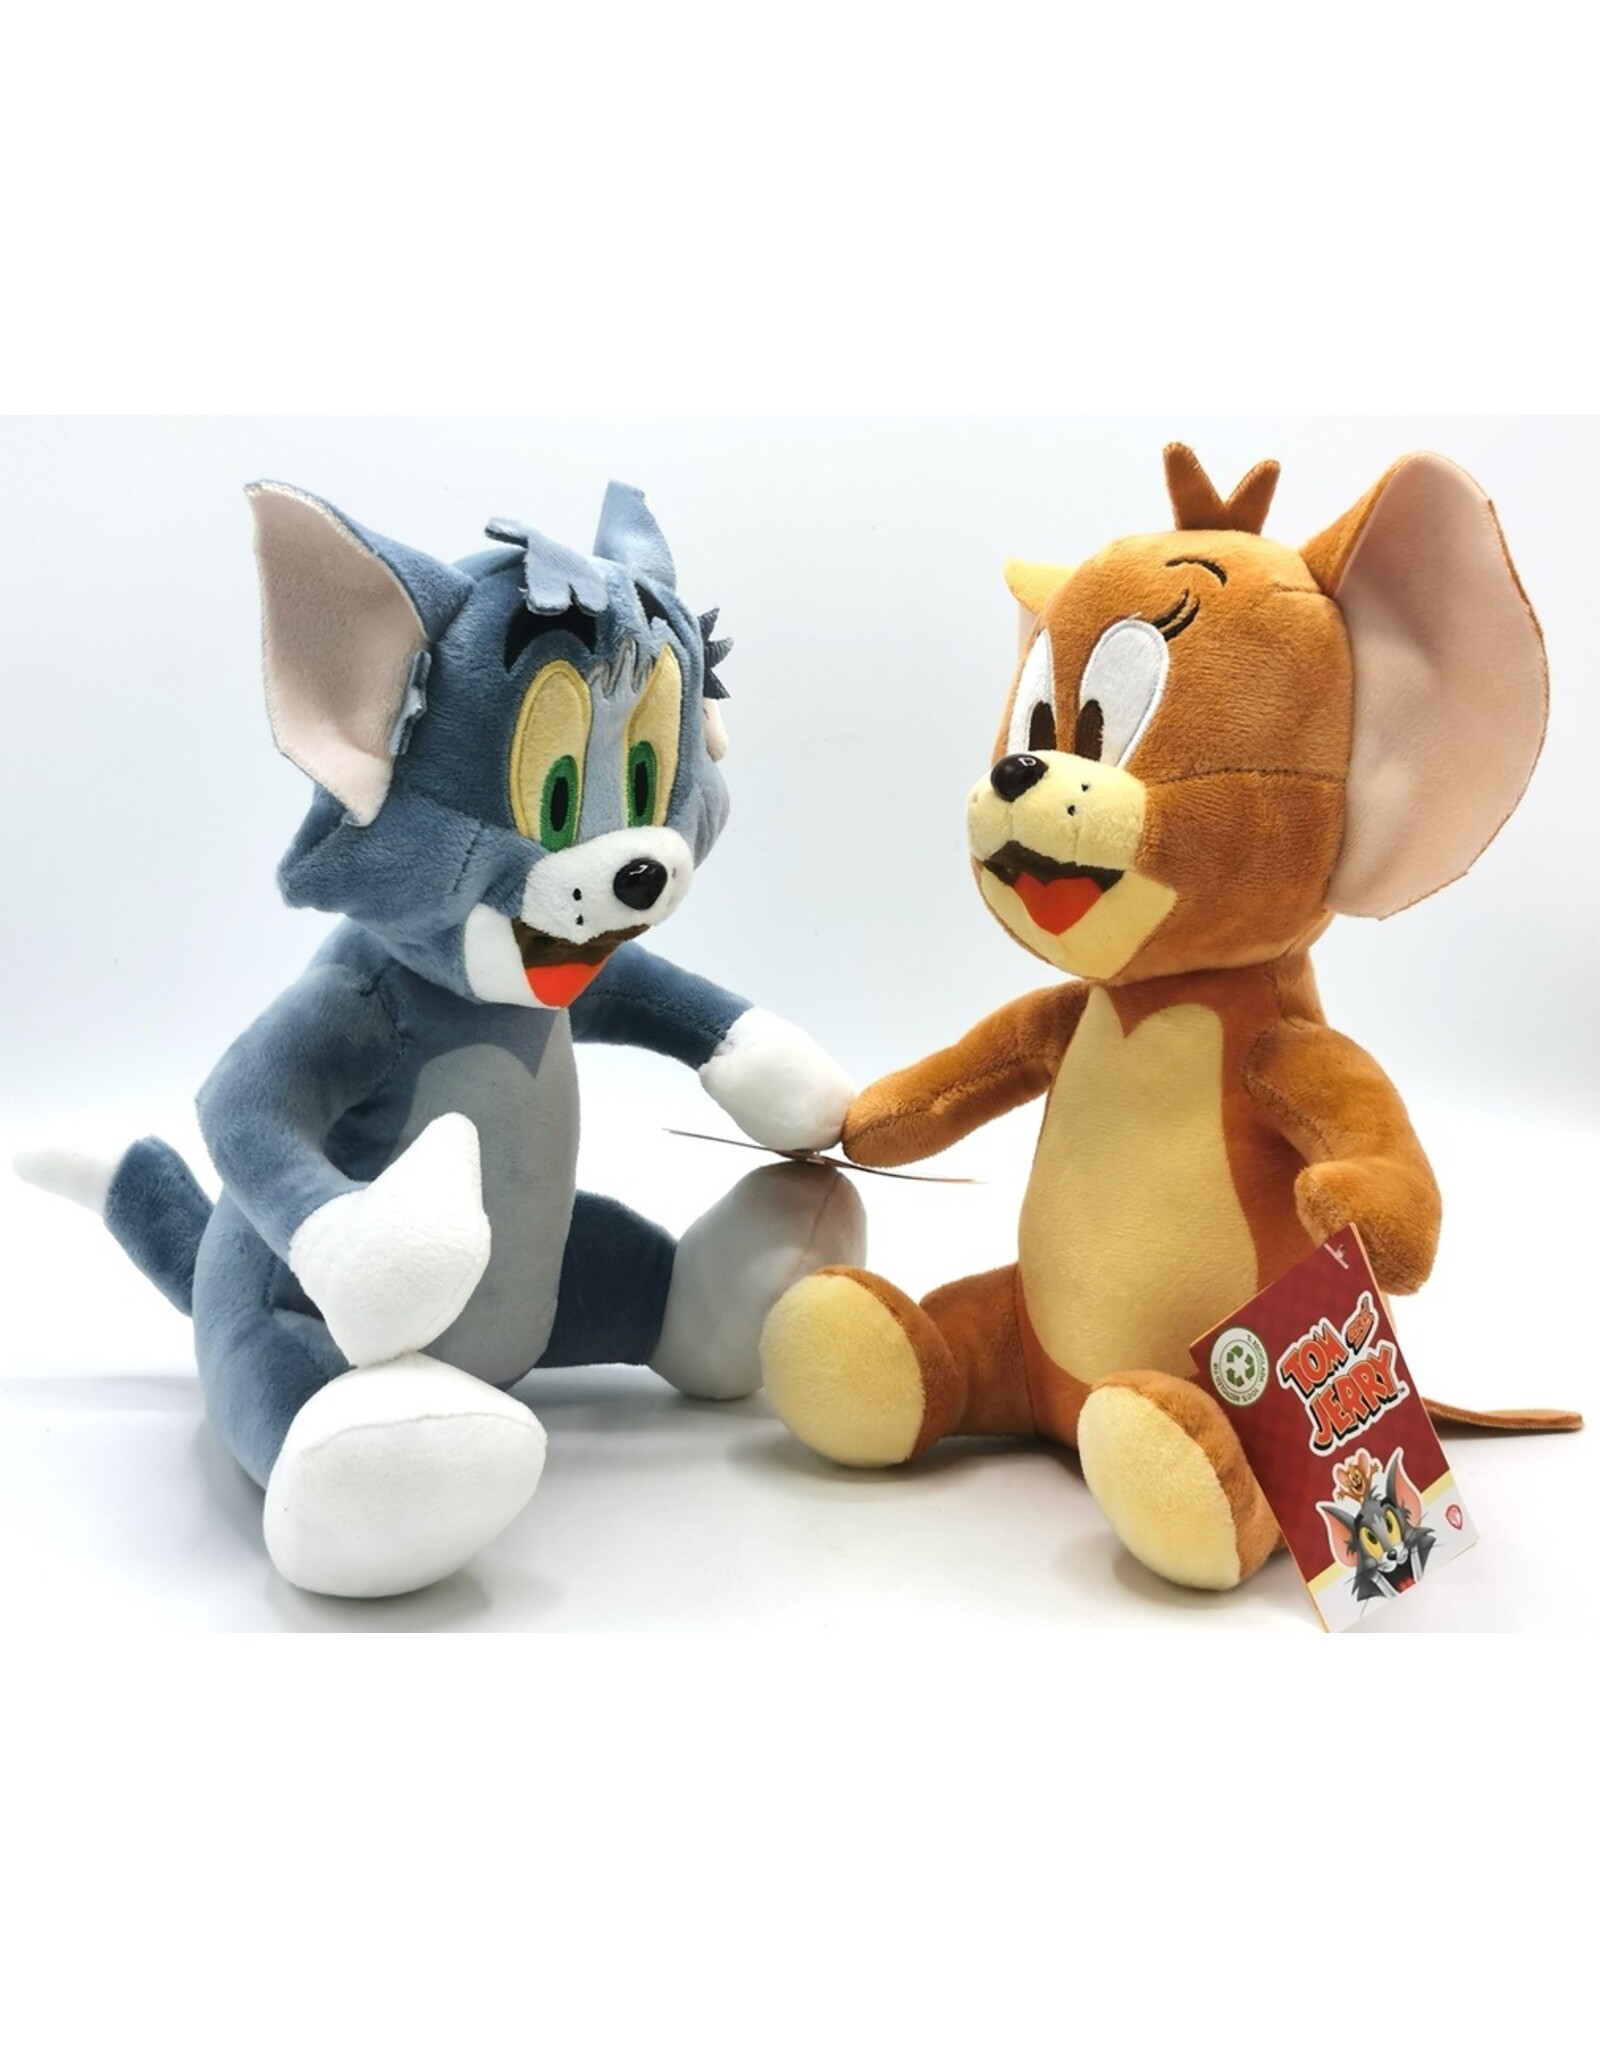 Warner Bros Merchandise pluche en figuren - Warner Bros Tom & Jerry pluche 28cm (set)